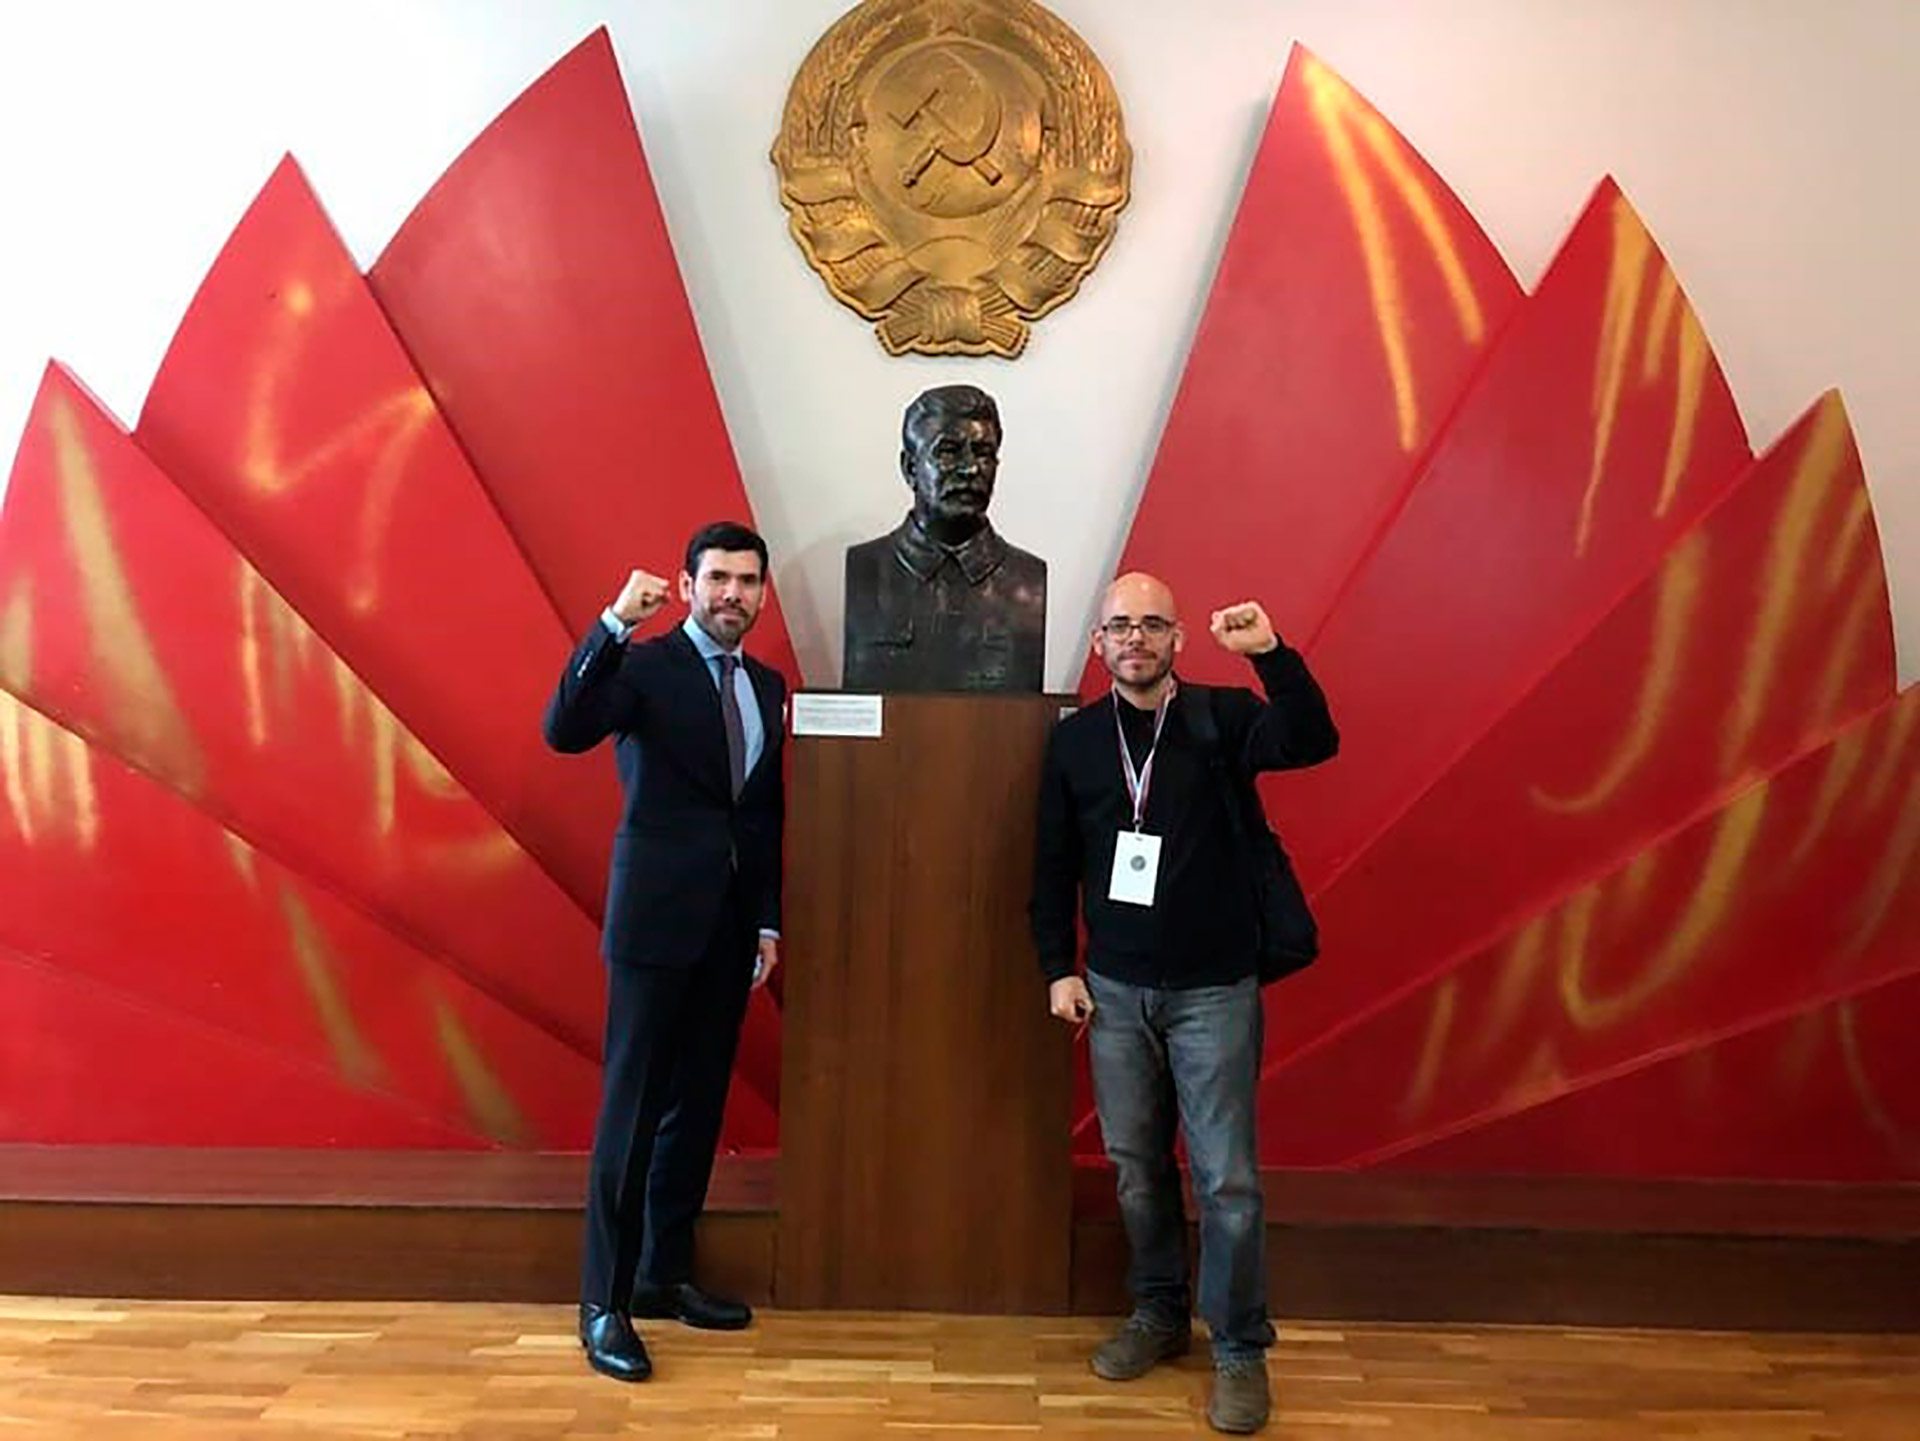 Laureano y Daniel Edmundo Ortega Murillo, hijos de la pareja presidencial de Nicaragua, posan junto al busto del dictador soviético Iósif Stalin en junio de 2021.  (Foto 19 Digital)